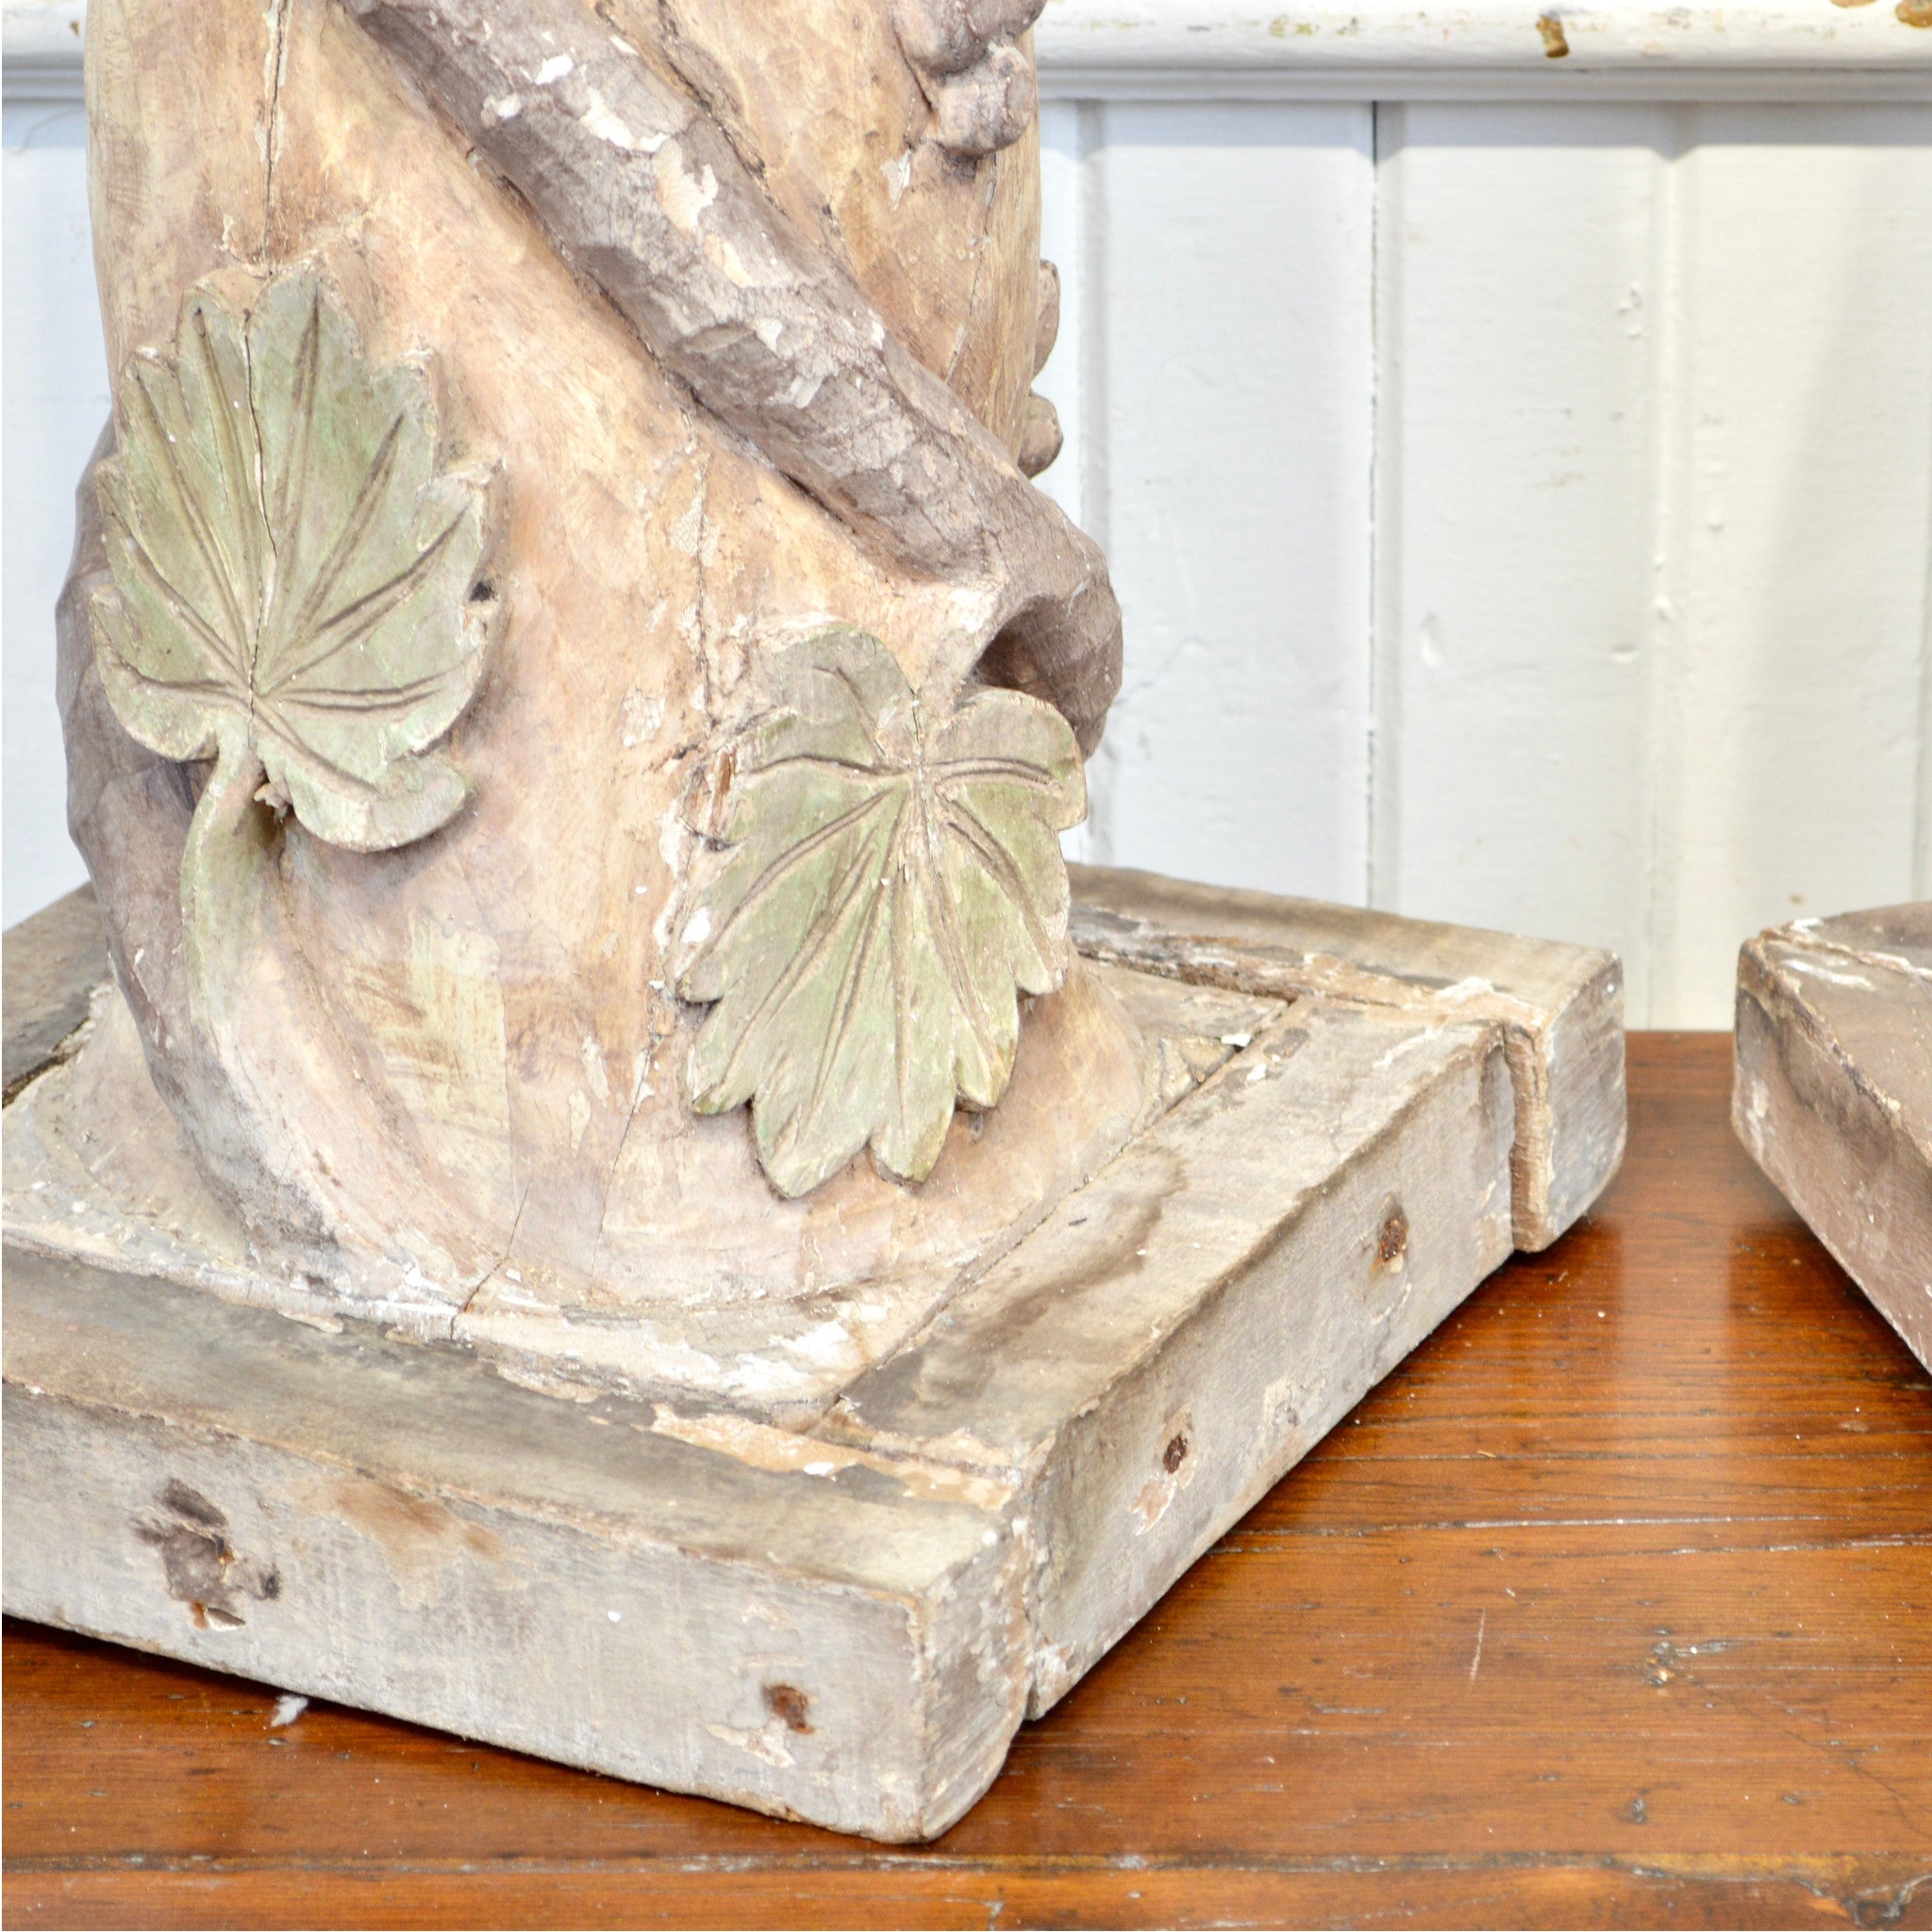 18th Century Italian Carved Wooden Pedestals - Salvage-Garden